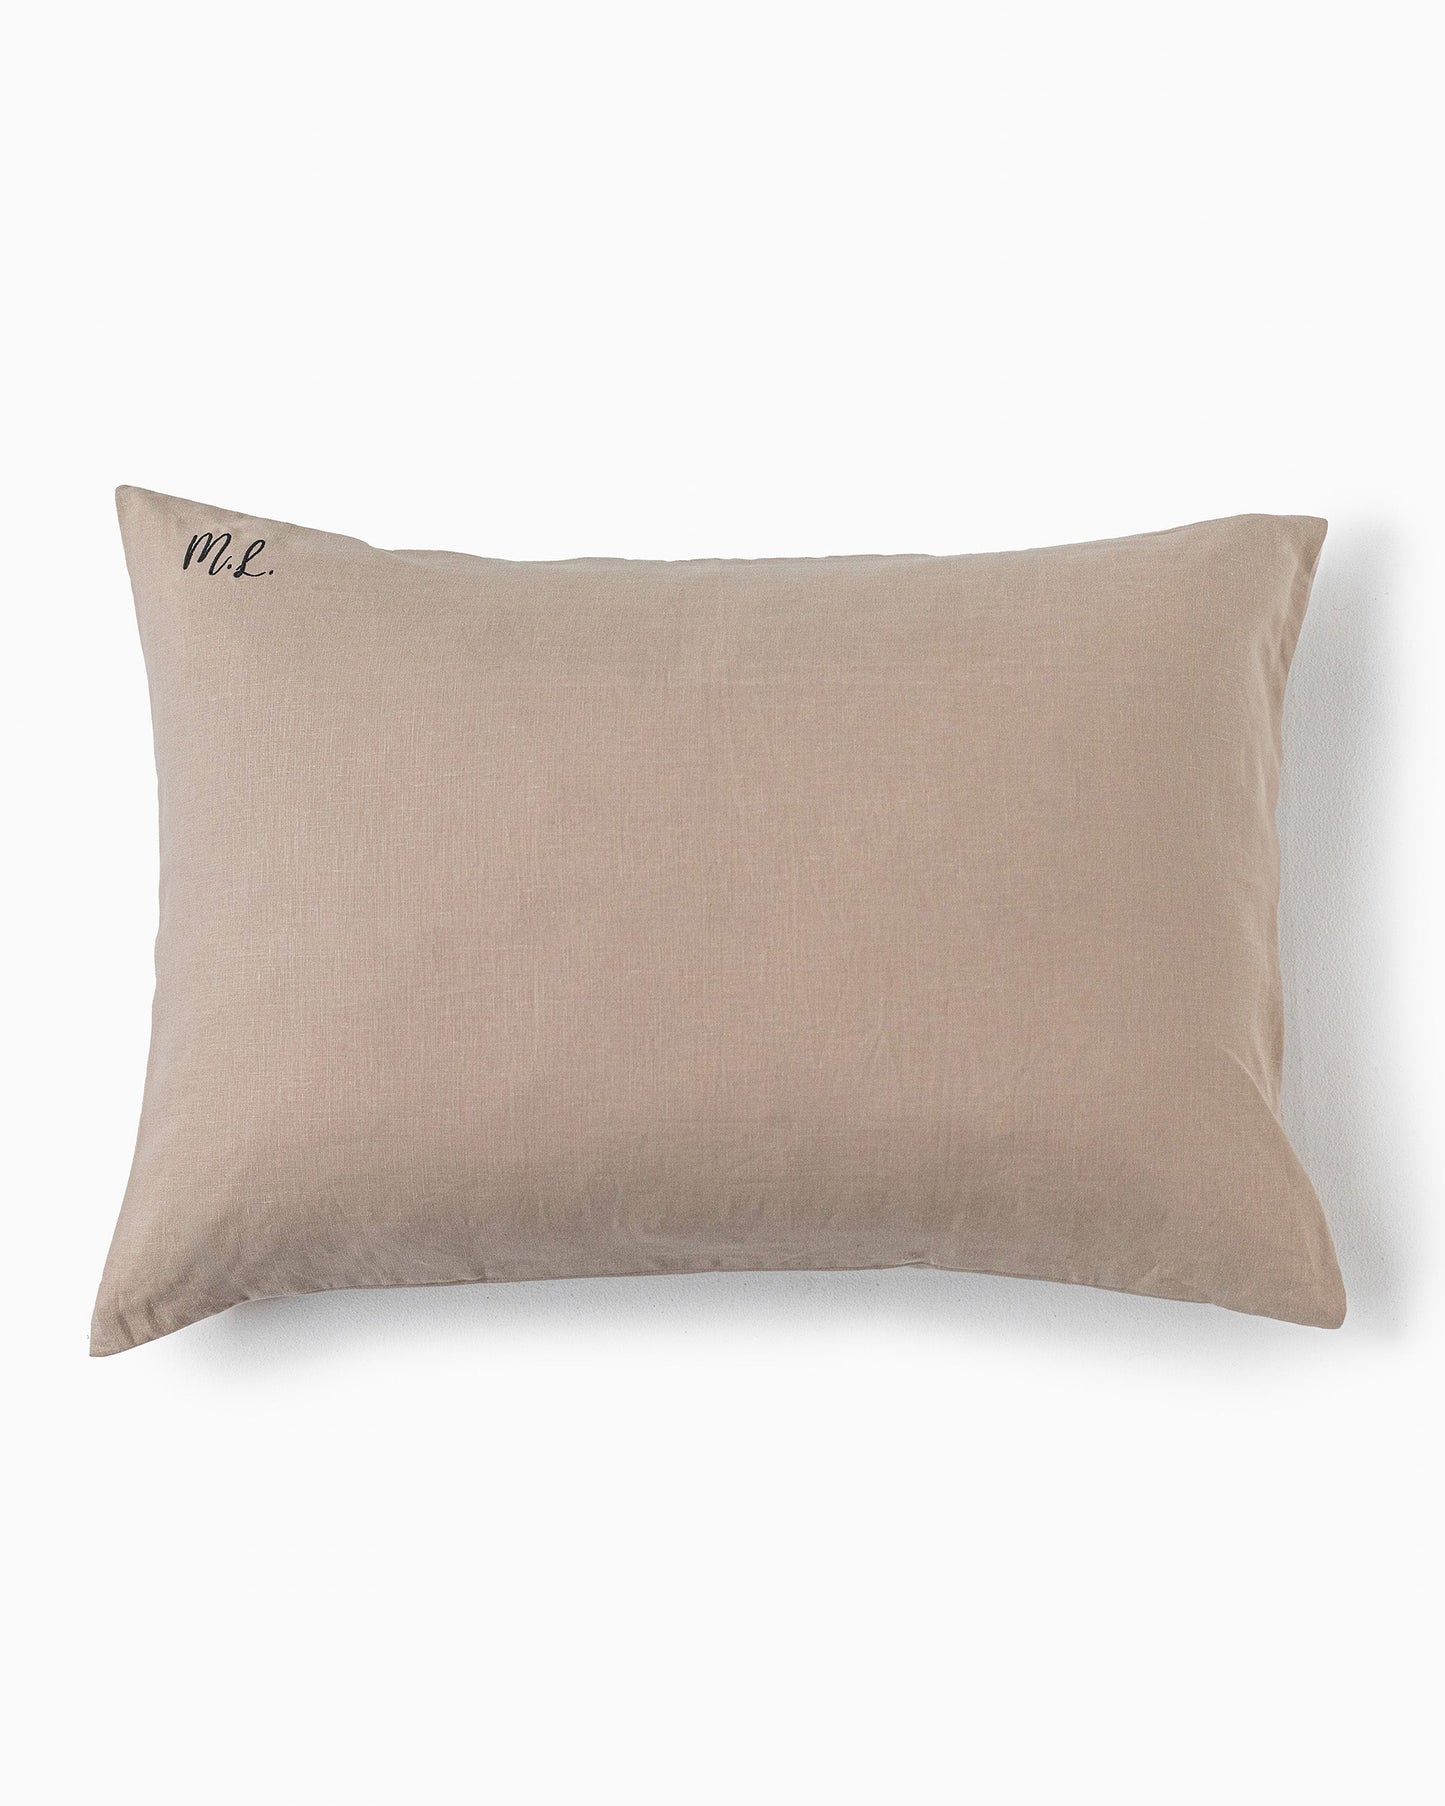 Natural linen pillowcase - MagicLinen